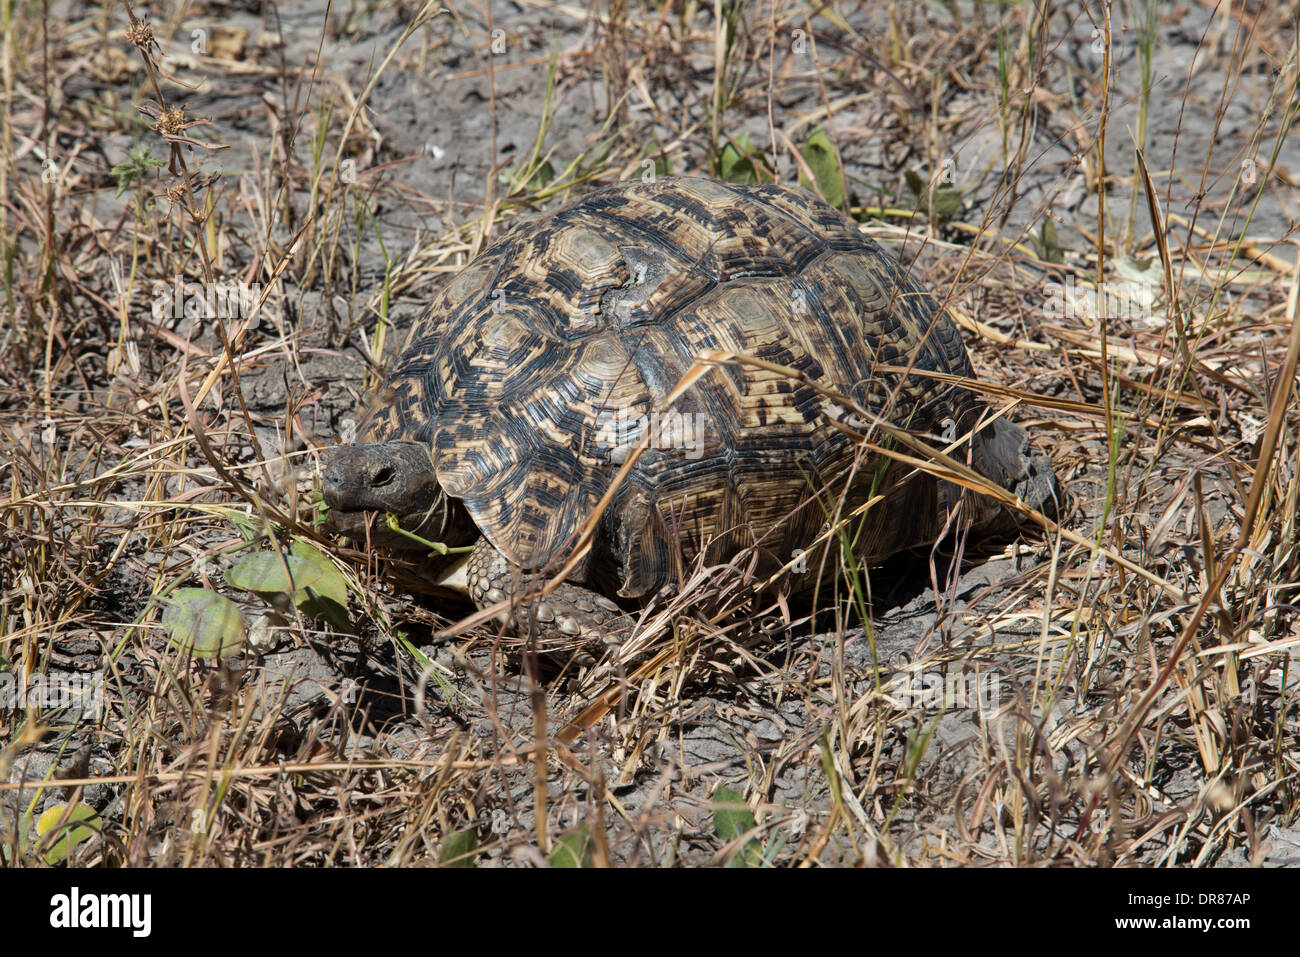 La tortue léopard Geochelone pardalis ( ) est une espèce de tortue et entouré de la famille Testudinidae vivant dans la savane Banque D'Images